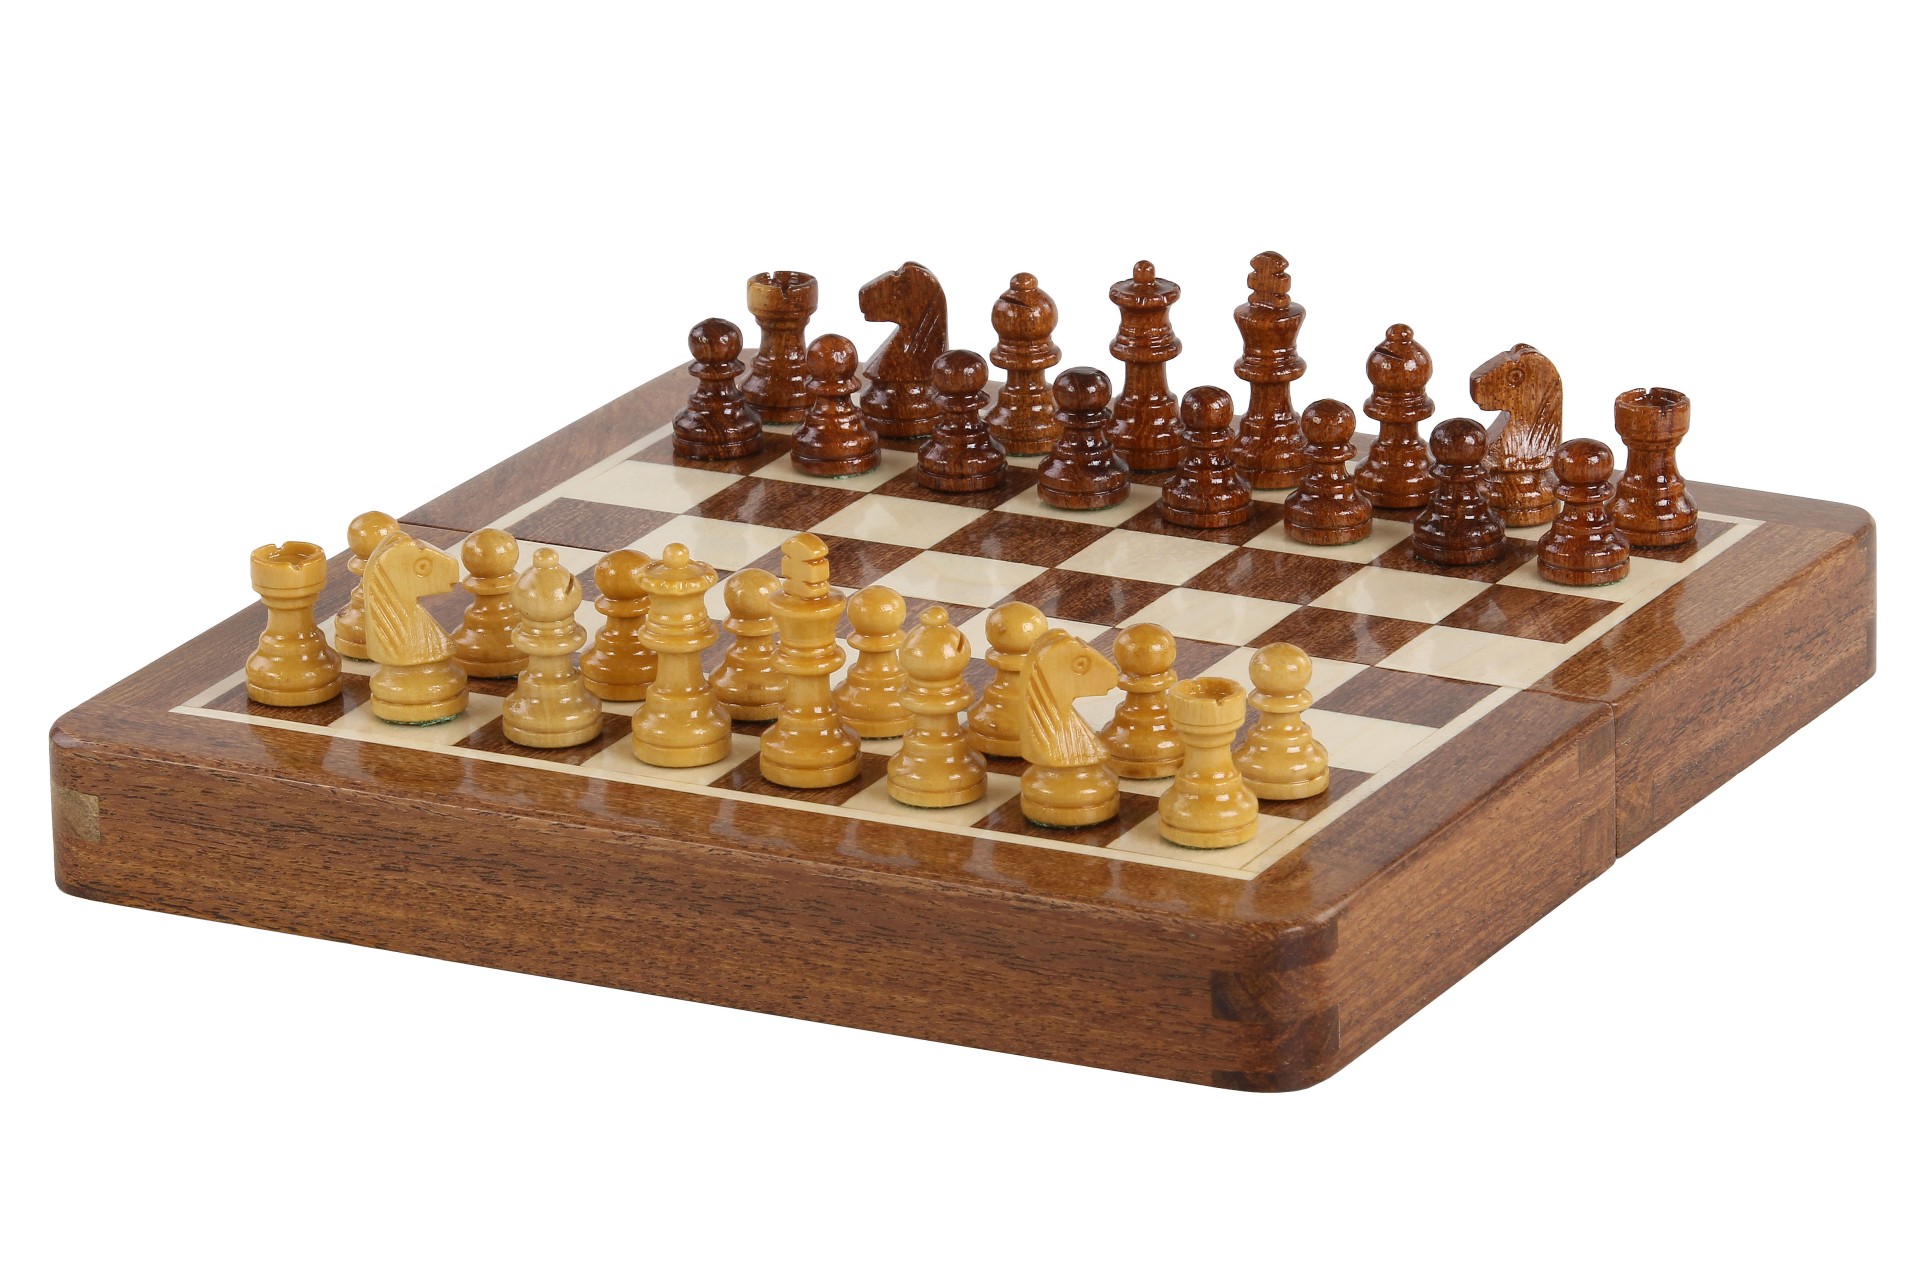 https://world-of-chess.fr/wp-content/uploads/2022/01/CHI7_4_resized.jpg